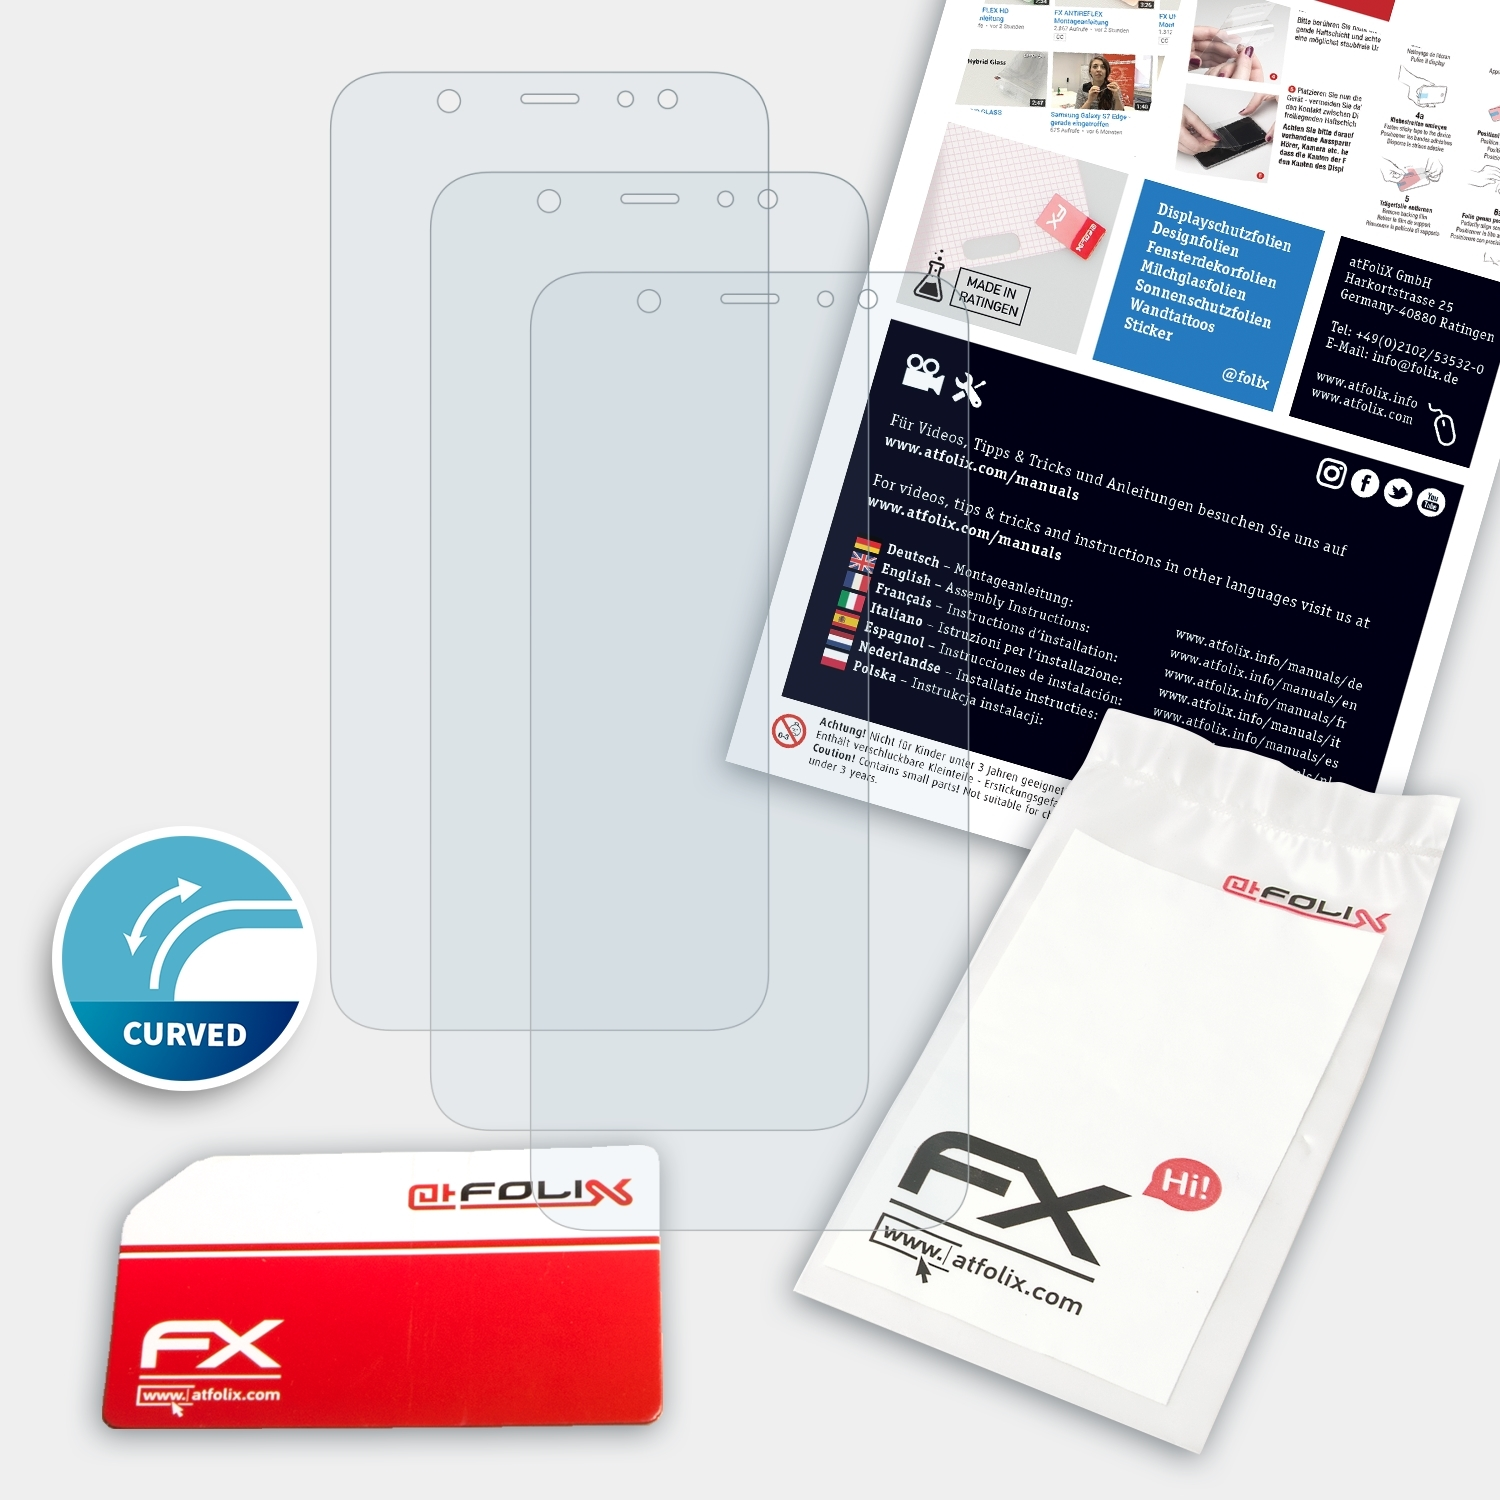 ATFOLIX 3x FX-ActiFleX Displayschutz(für Samsung A6 Galaxy (2018)) Plus